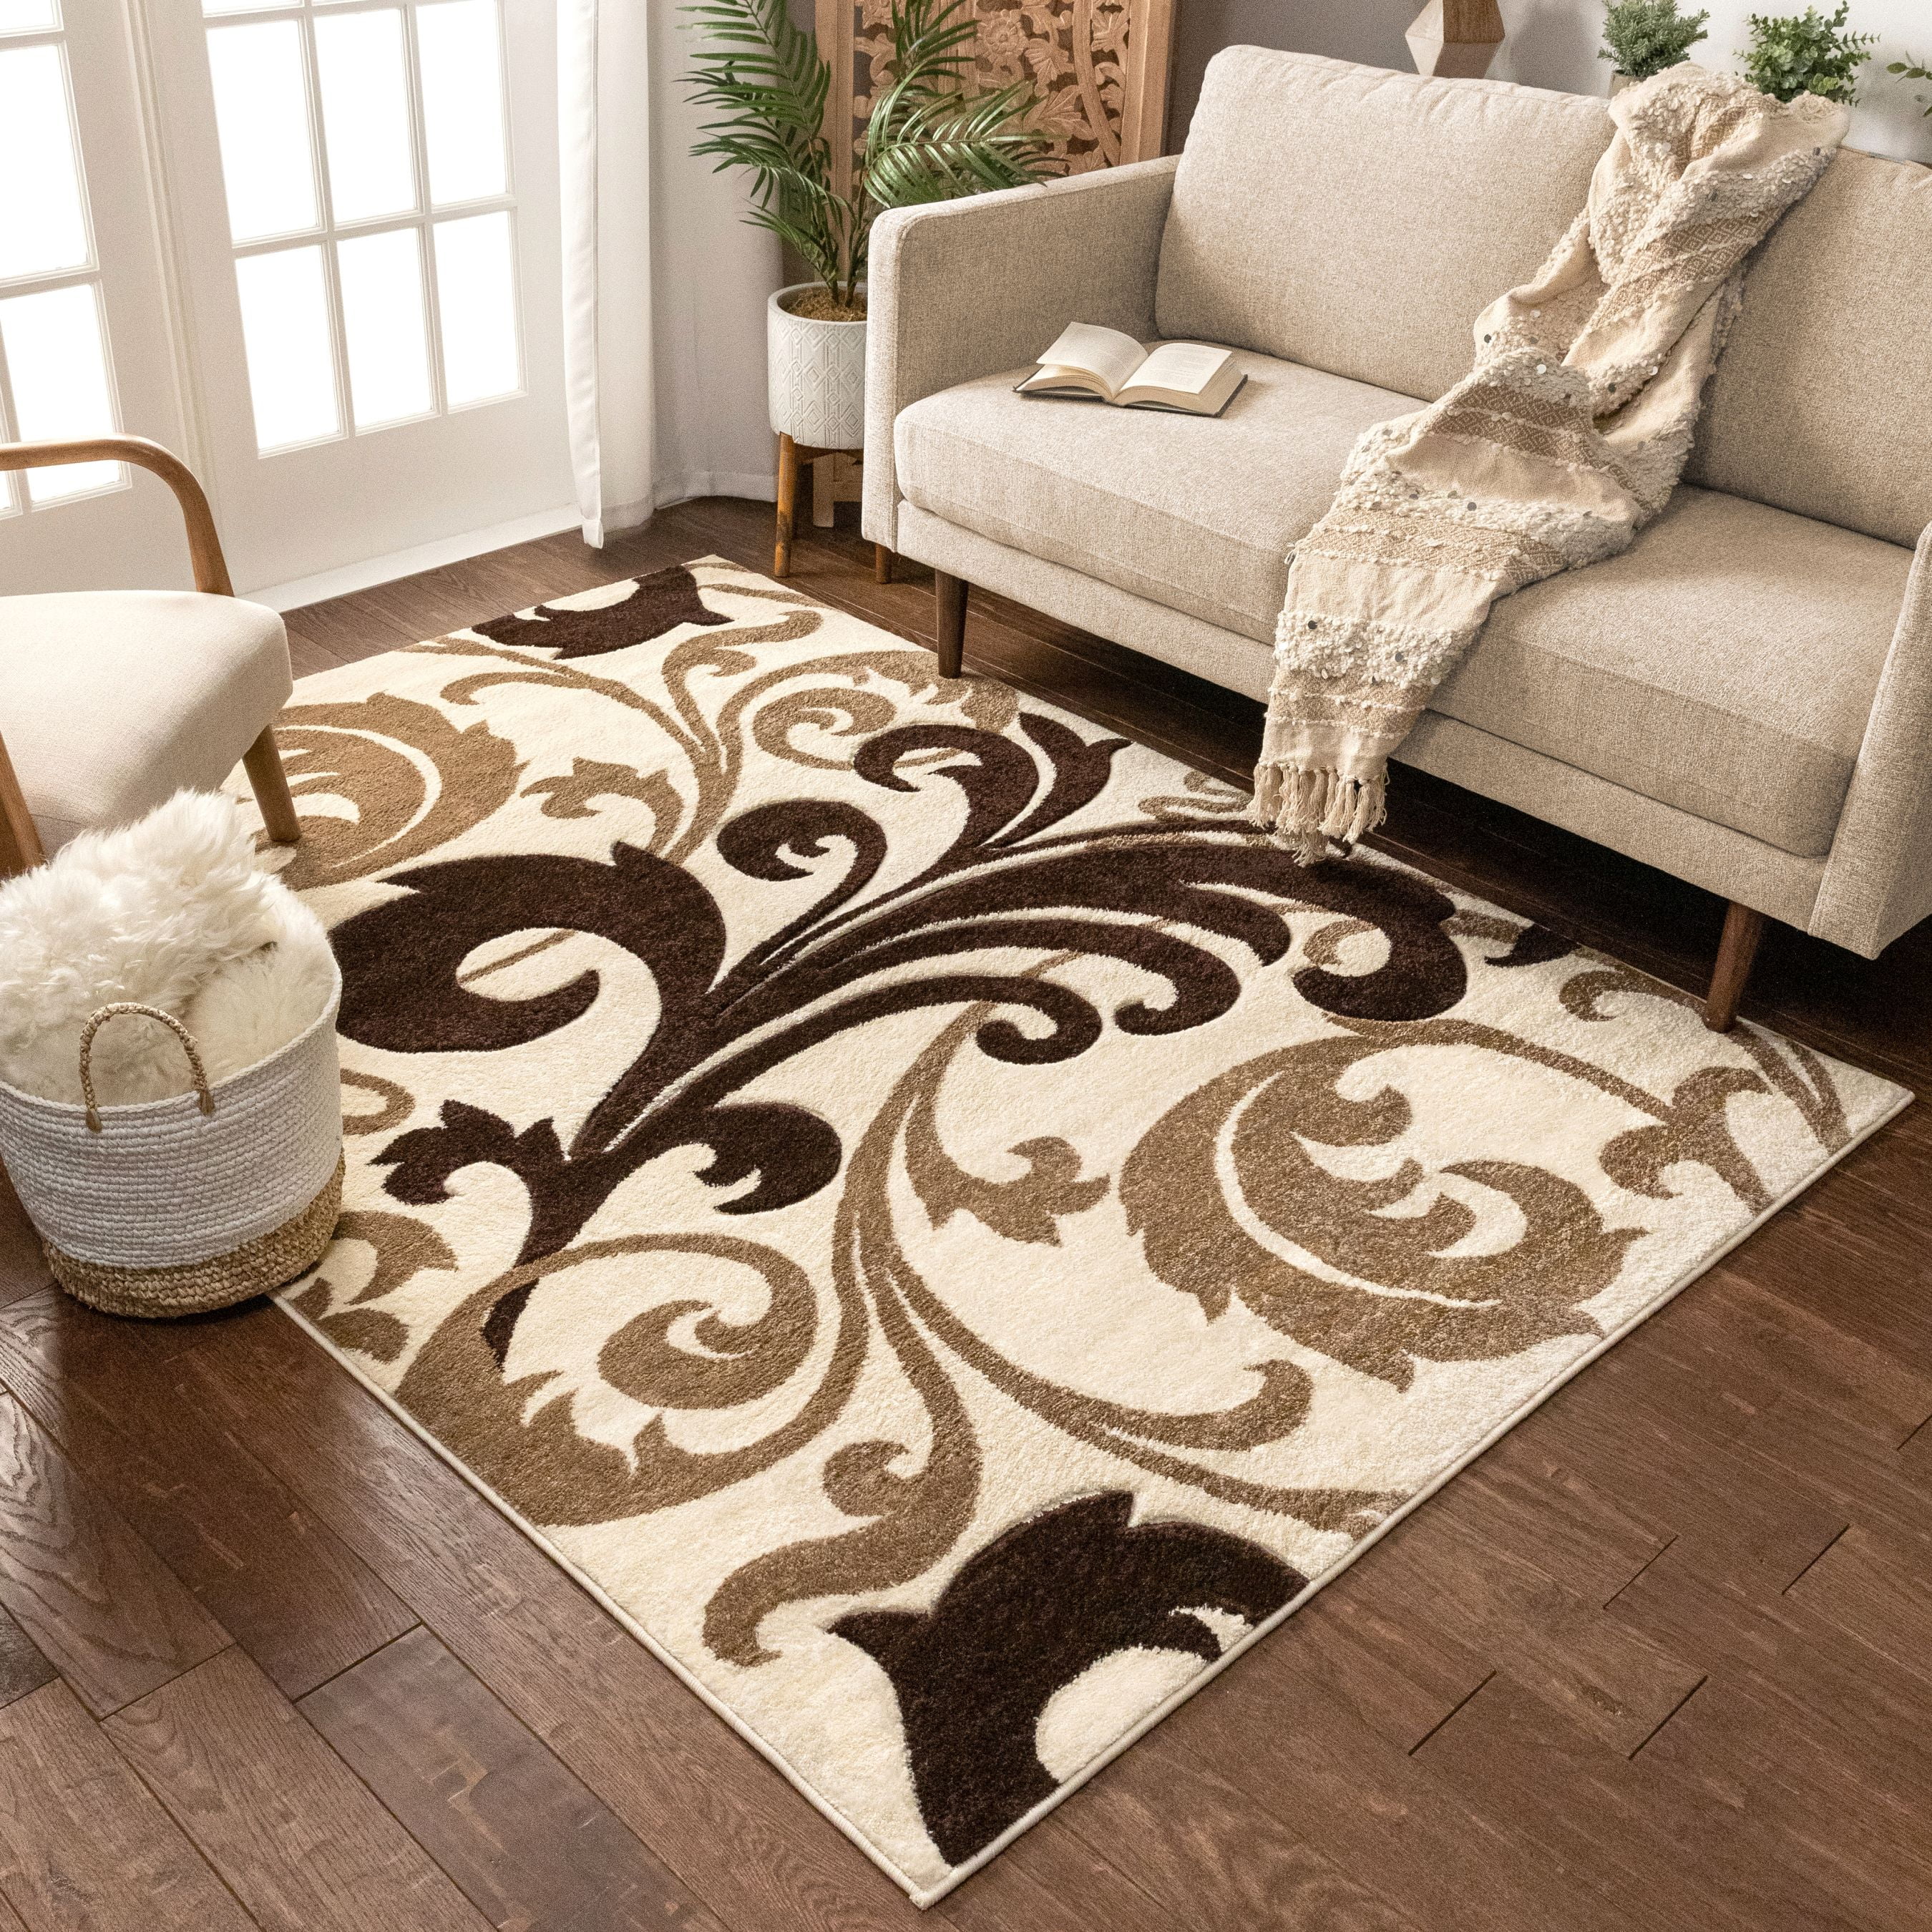 Modern Brown Living Room Rug Beige Floral Pattern Damask Style Area Carpet Mat 